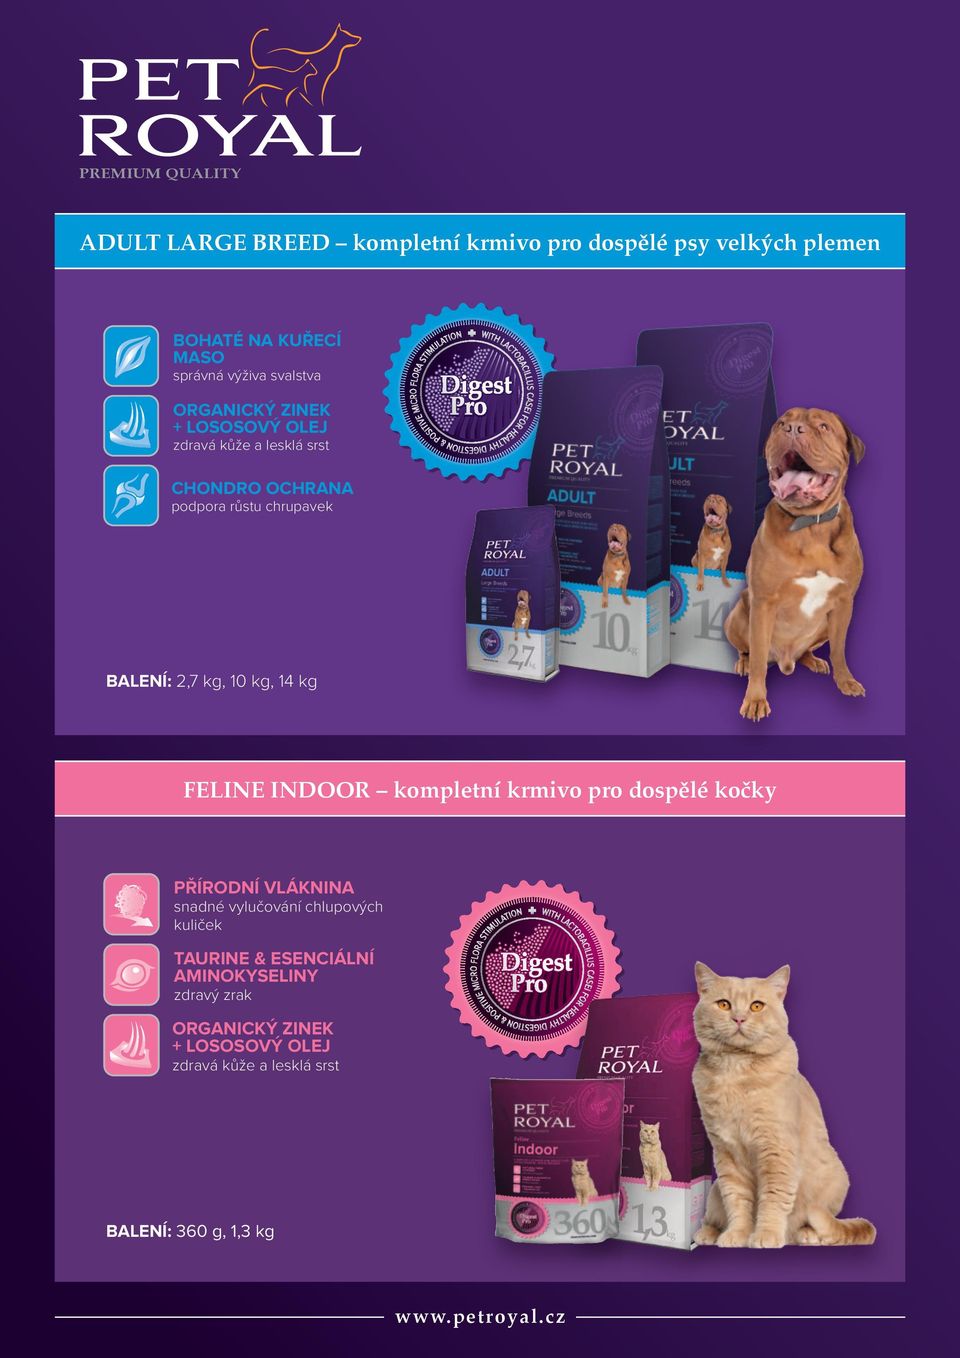 kg, 14 kg FELINE INDOOR kompletní krmivo pro dospělé kočky přírodní VLÁKNINA snadné vylučování chlupových kuliček Taurine &